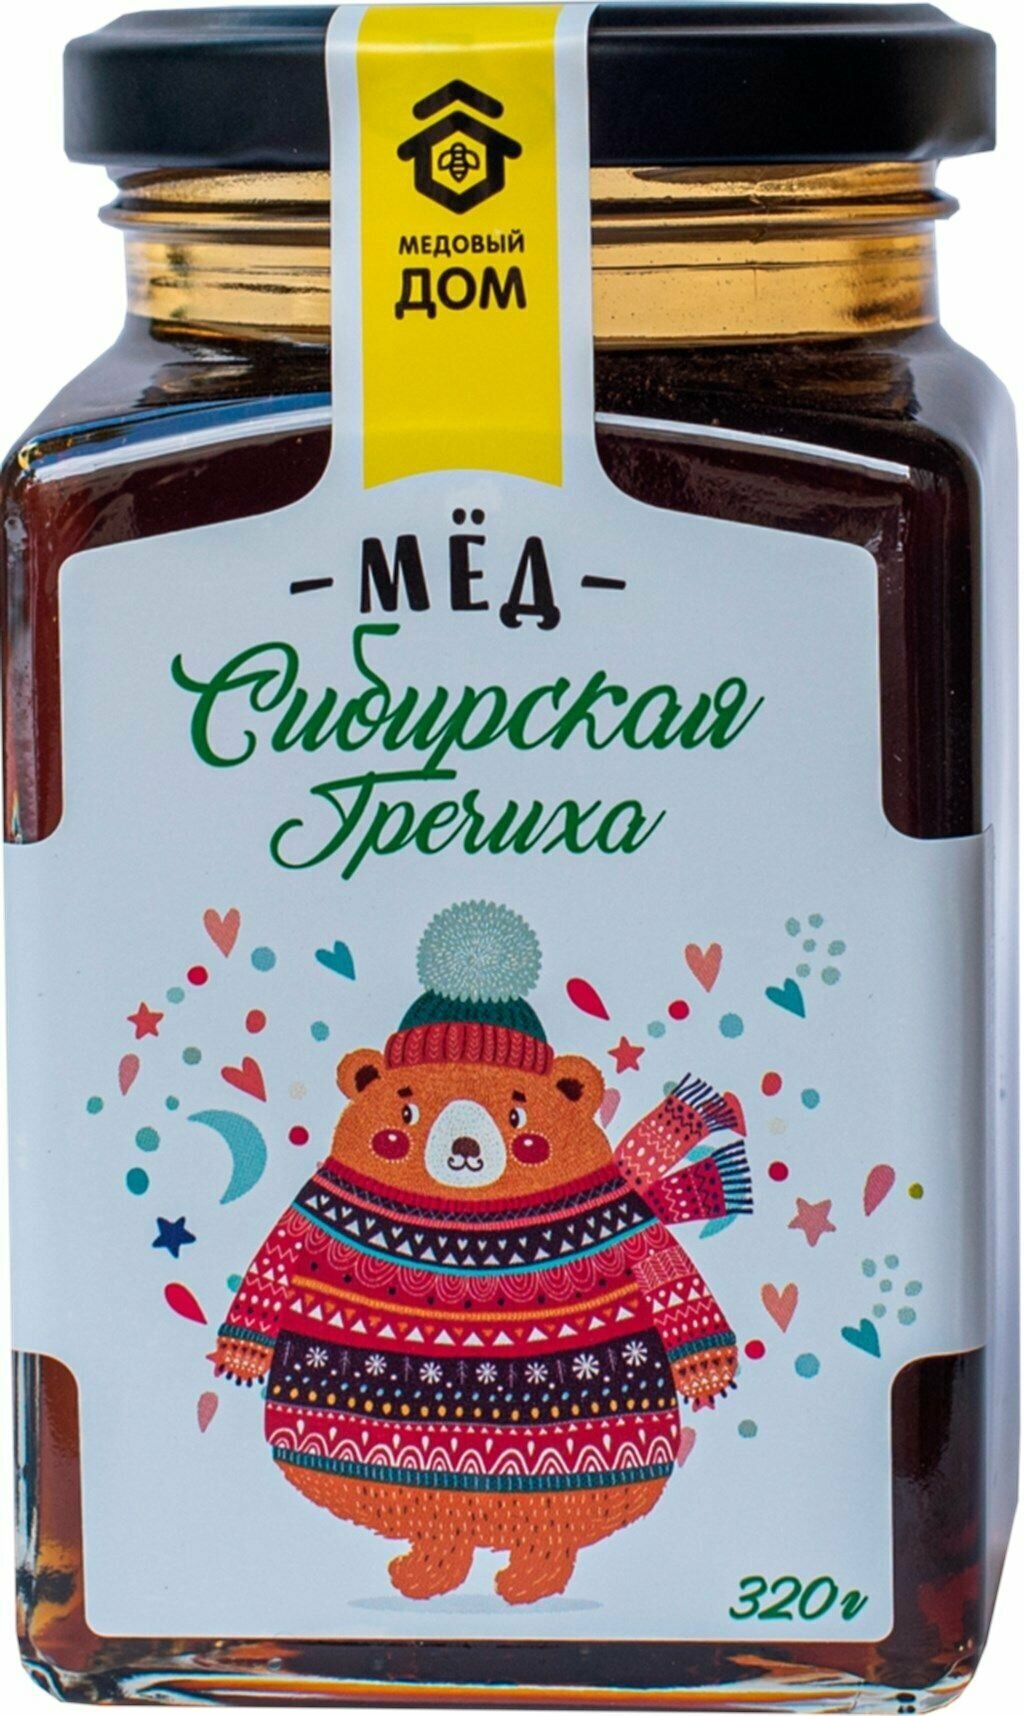 Мед цветочный медовый ДОМ Сибирская гречиха, натуральный, 320 г - 3 шт.